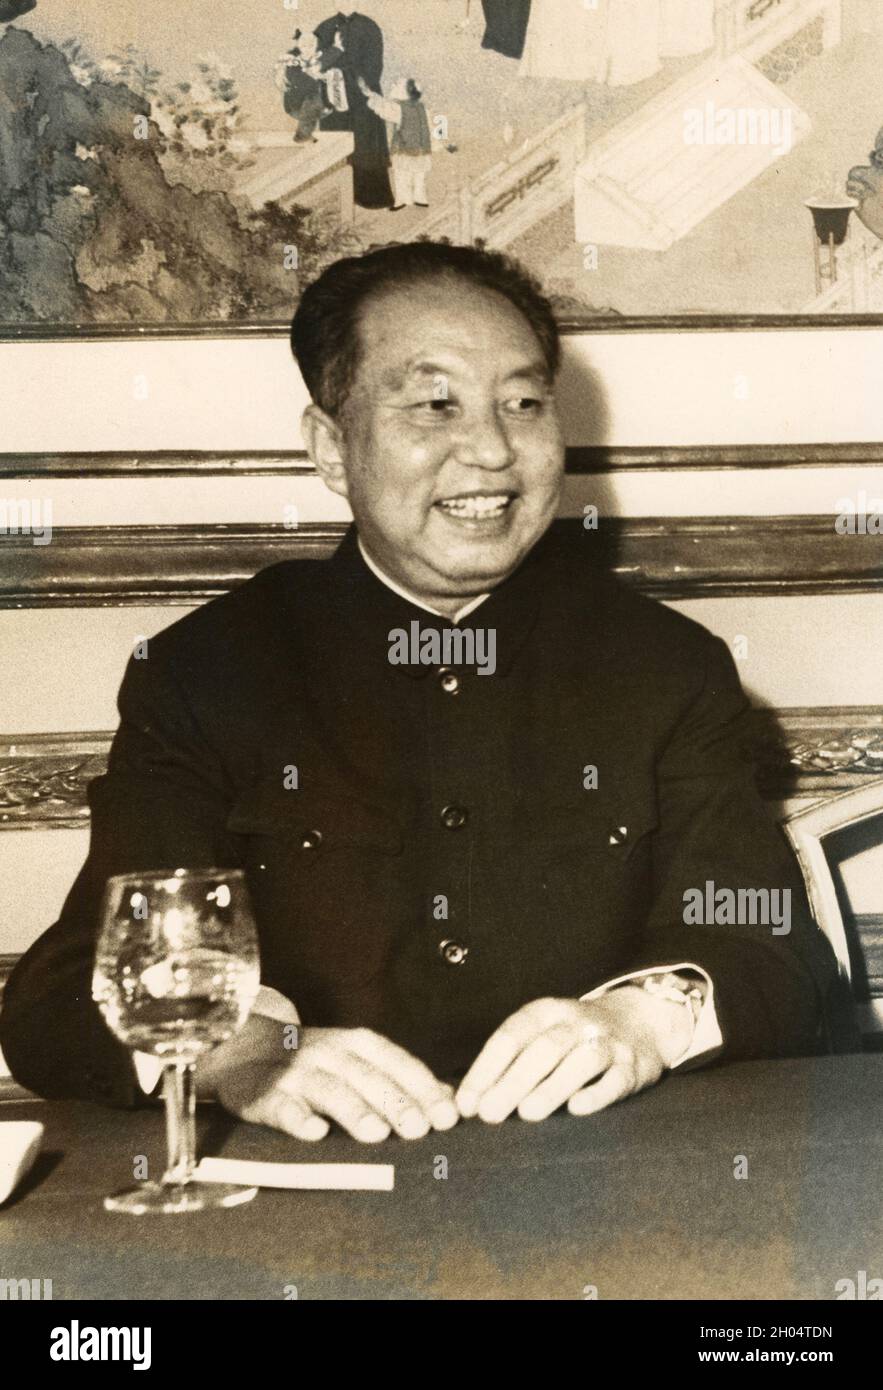 Der chinesische Politiker und Vorsitzende der Kommunistischen Partei Hua Kuo Feng, 1970er Jahre Stockfoto